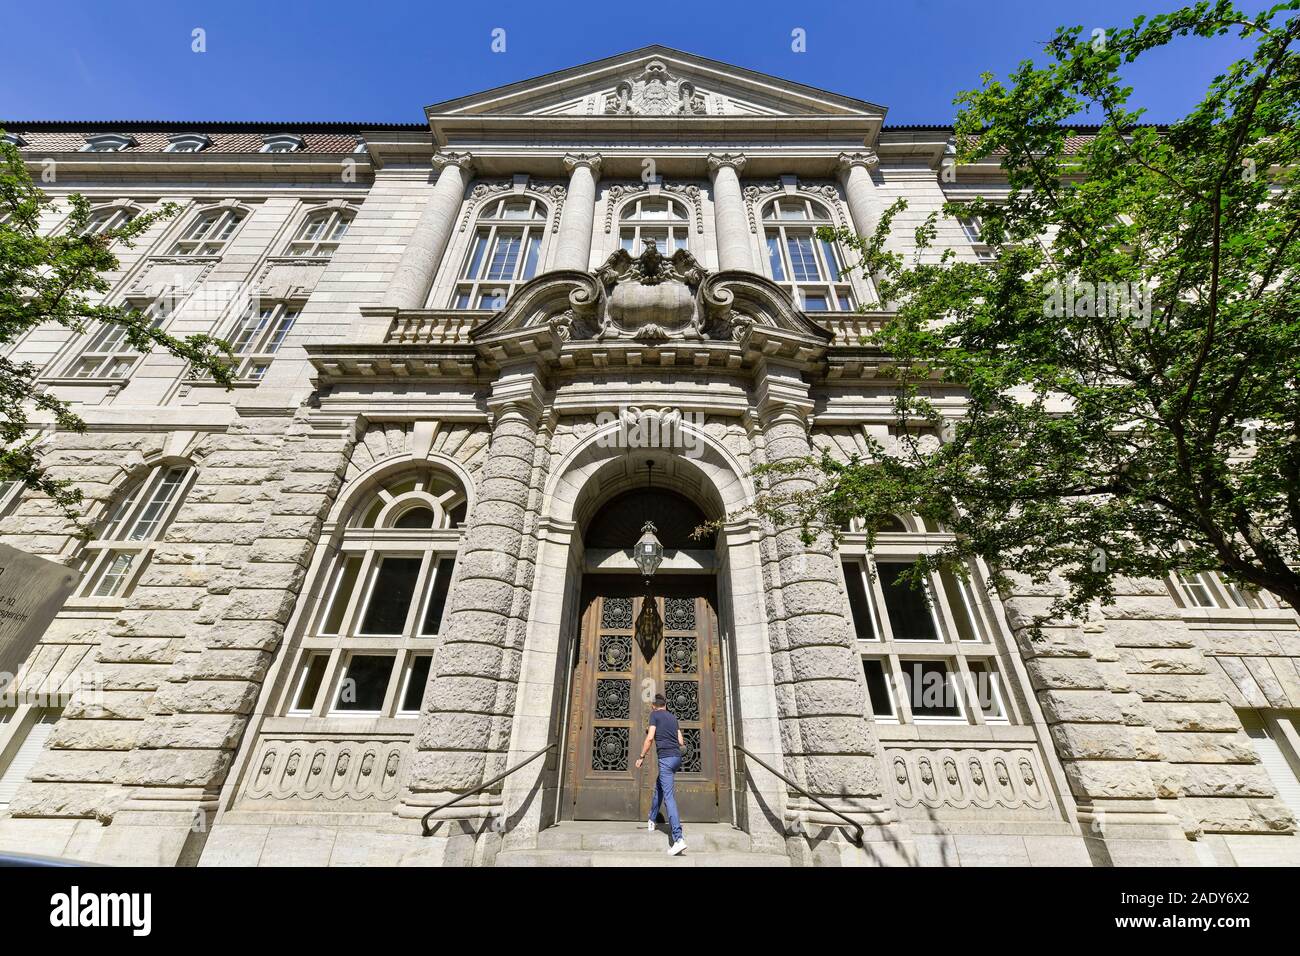 Ehemaliges Reichskriegsgericht, Witzlebenstraße 4 - 10, Charlottenburg, Berlin, Deutschland Stock Photo